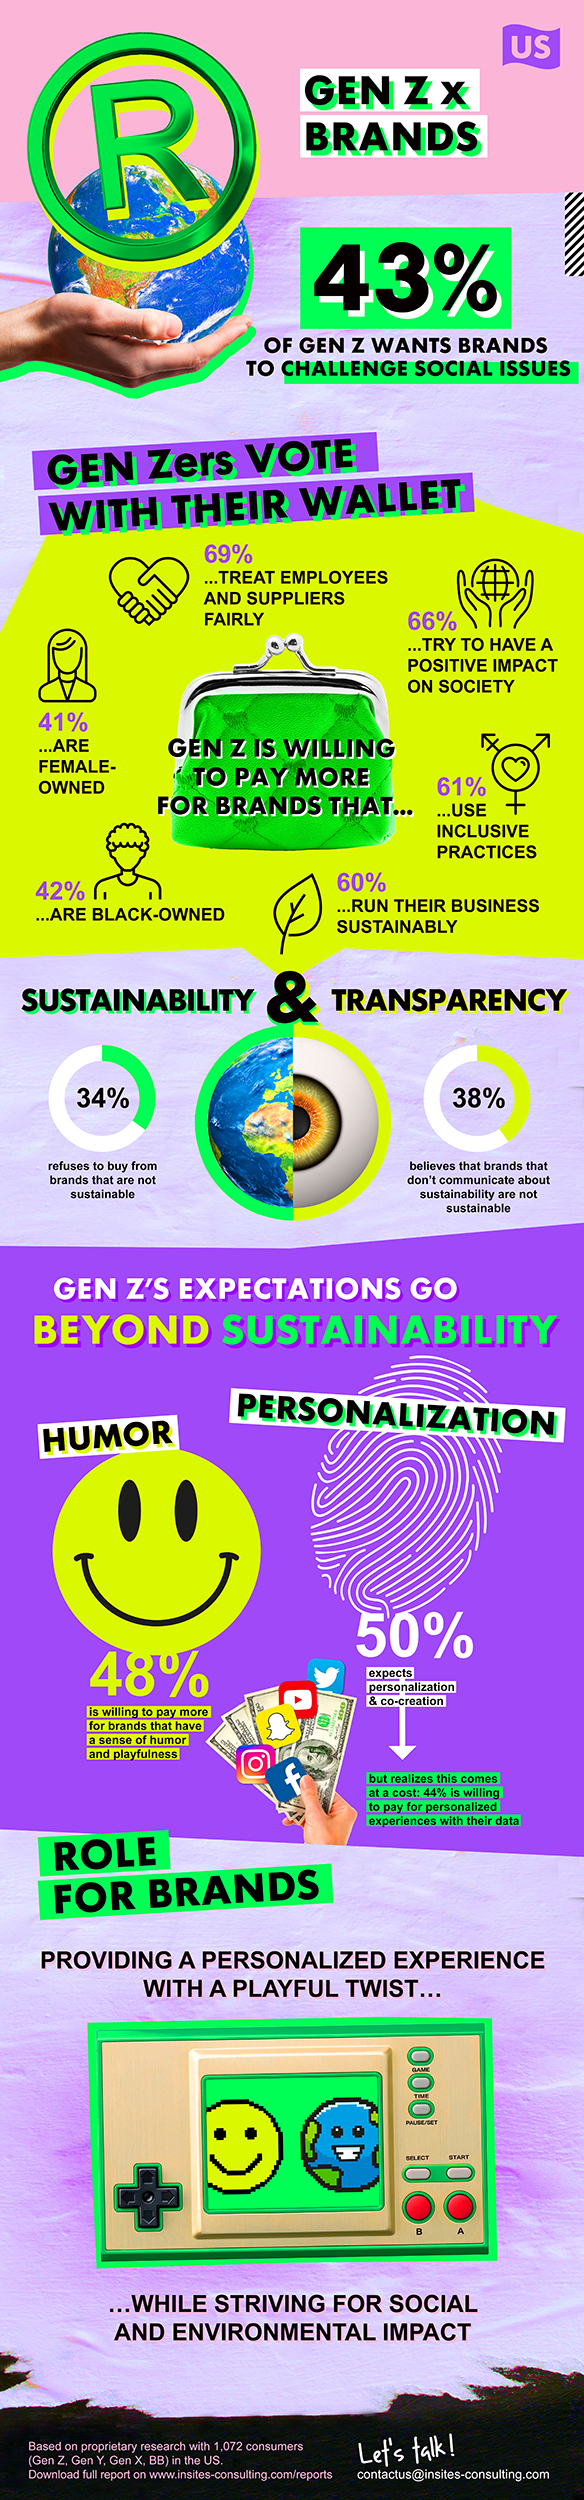 Gen Z x Brands Infographic US